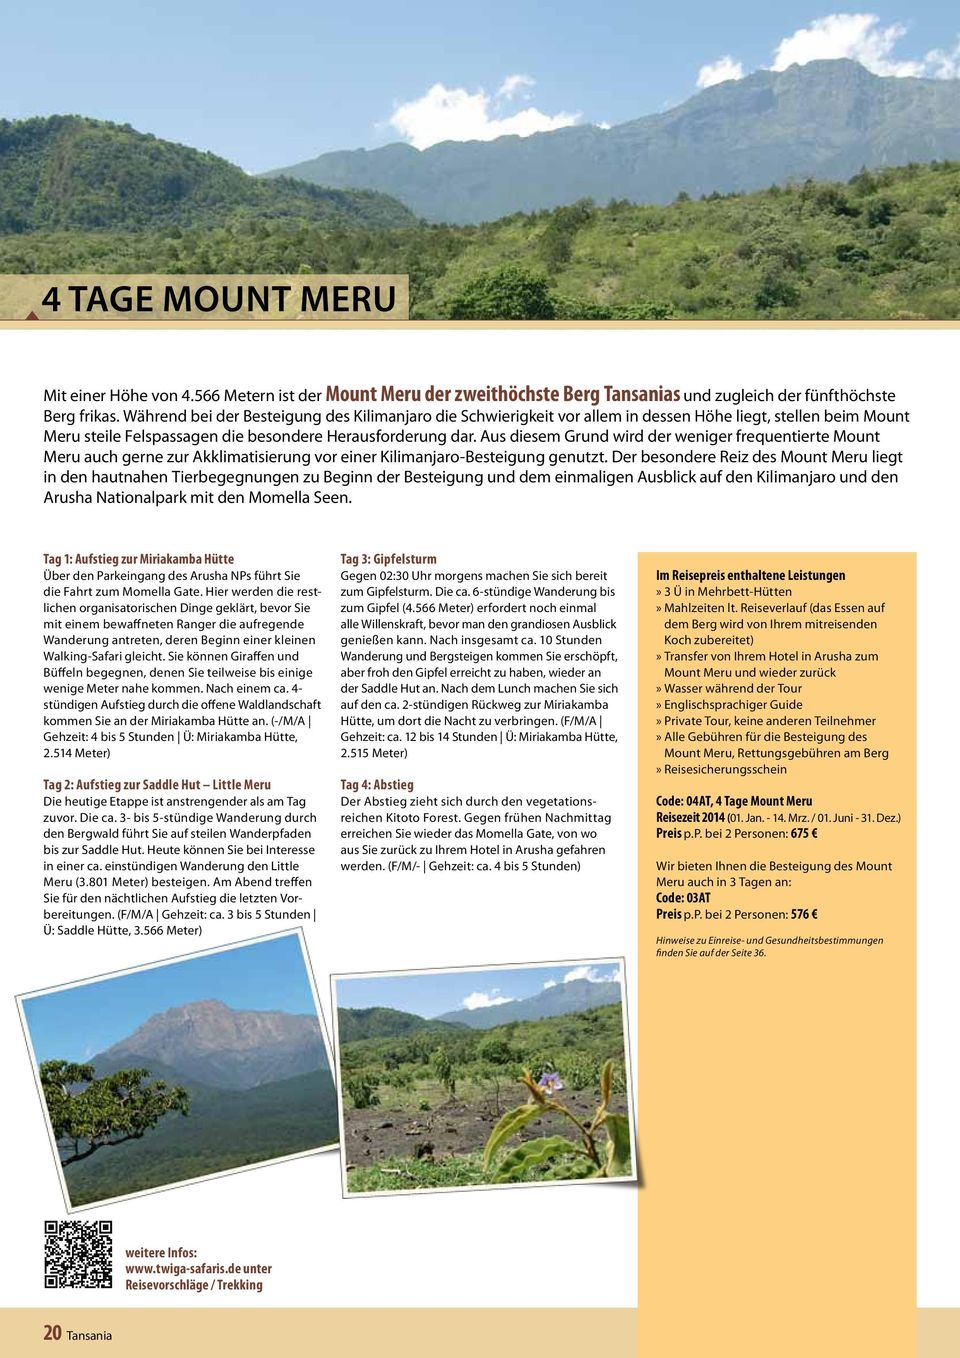 Aus diesem Grund wird der weniger frequentierte Mount Meru auch gerne zur Akklimatisierung vor einer Kilimanjaro-Besteigung genutzt.